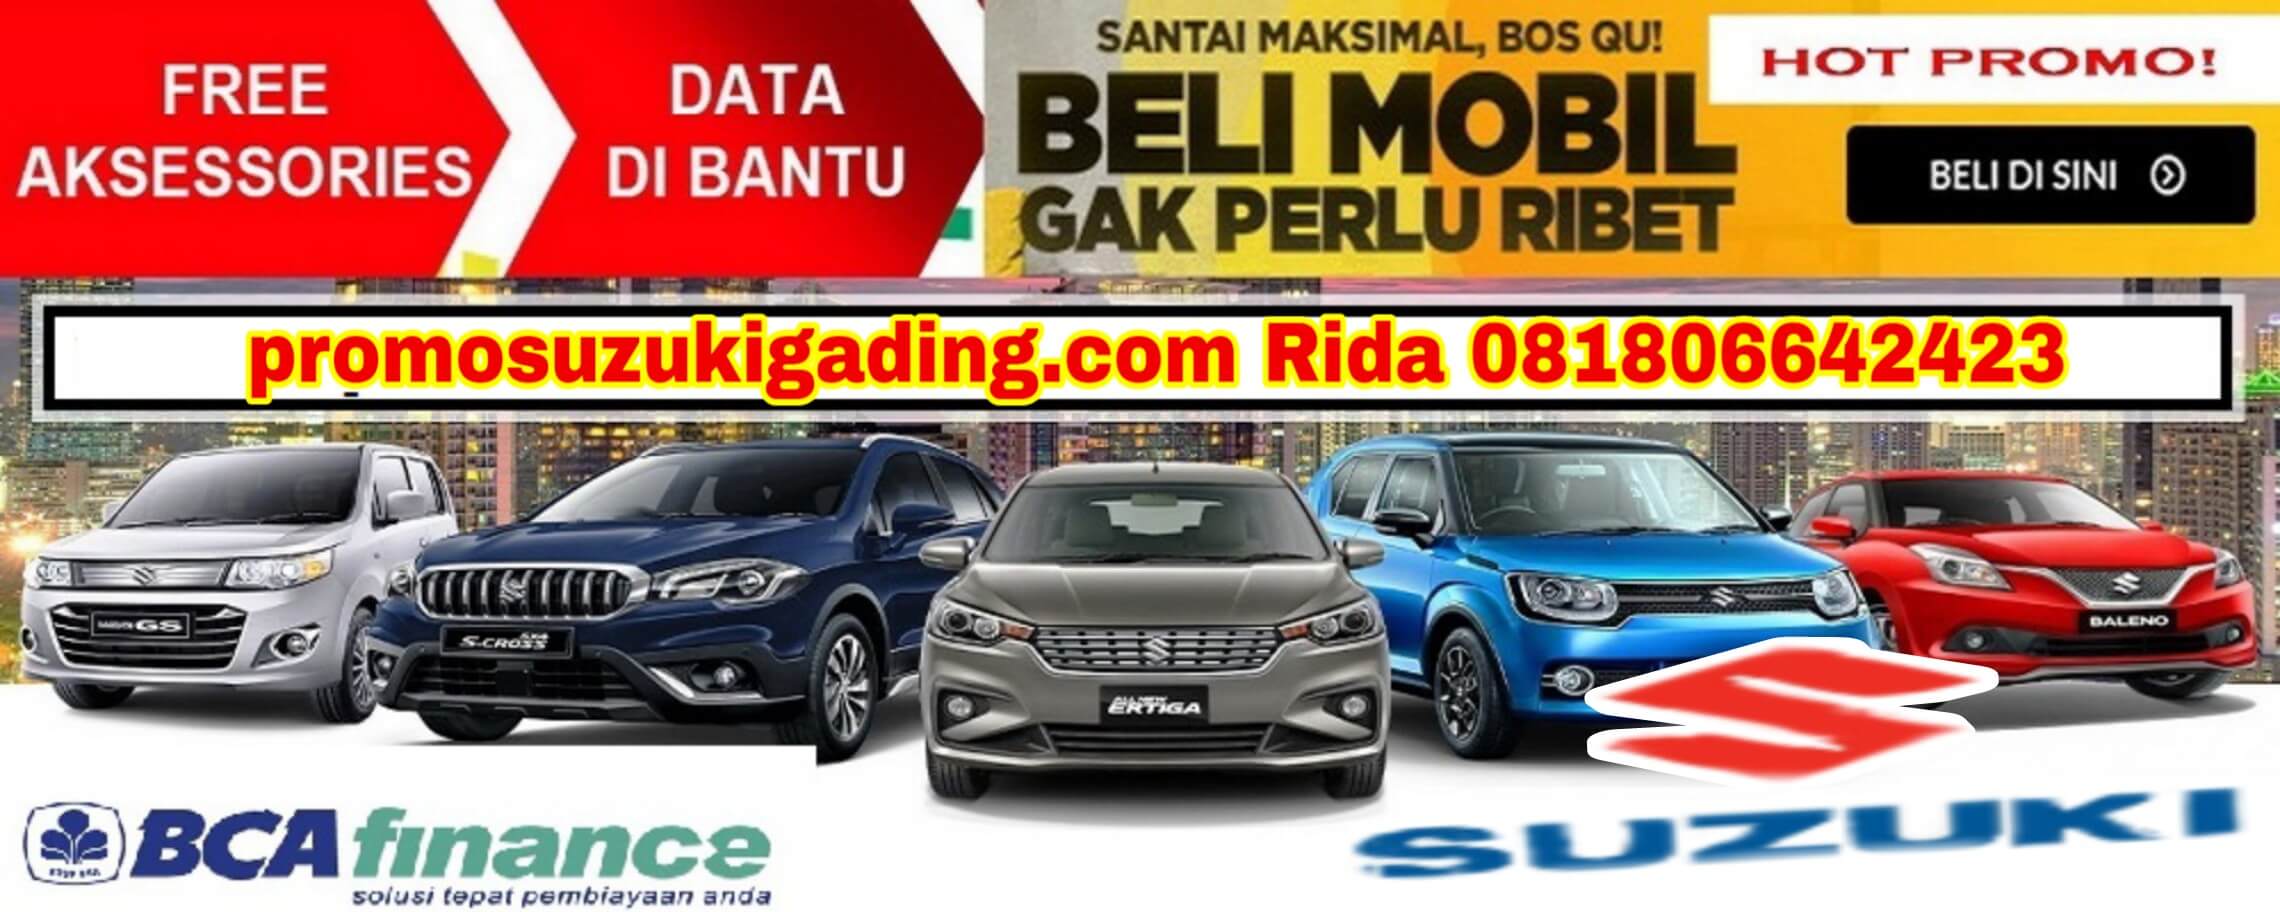 Promo Suzuki Gading Serpong Tangerang